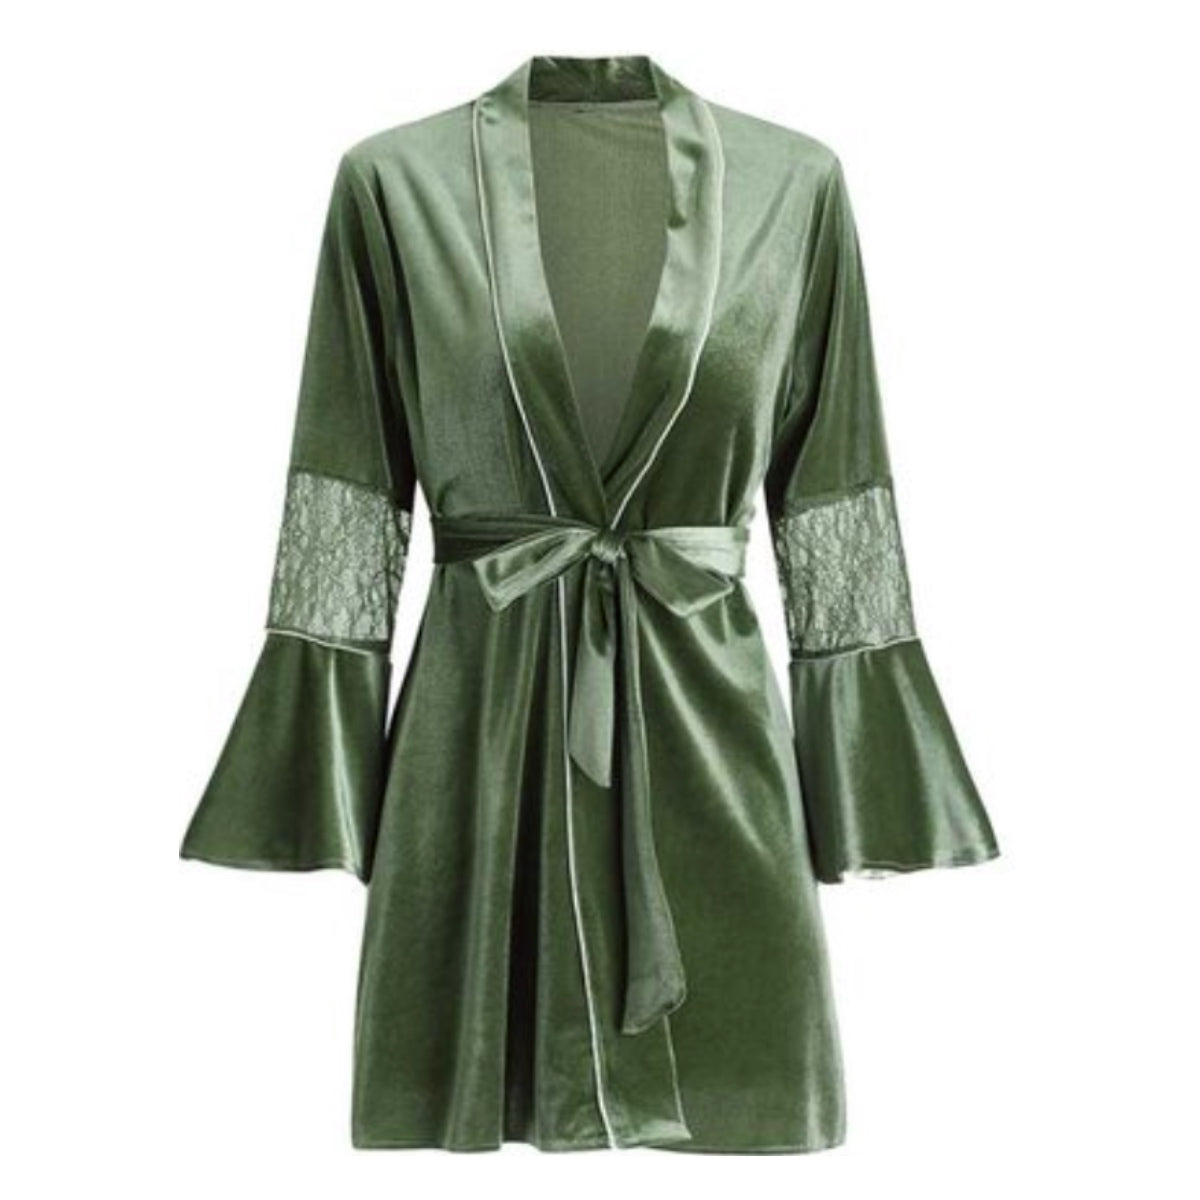 Pernilla velvet robe Intimates LOVEFREYA Free size Avocado green 